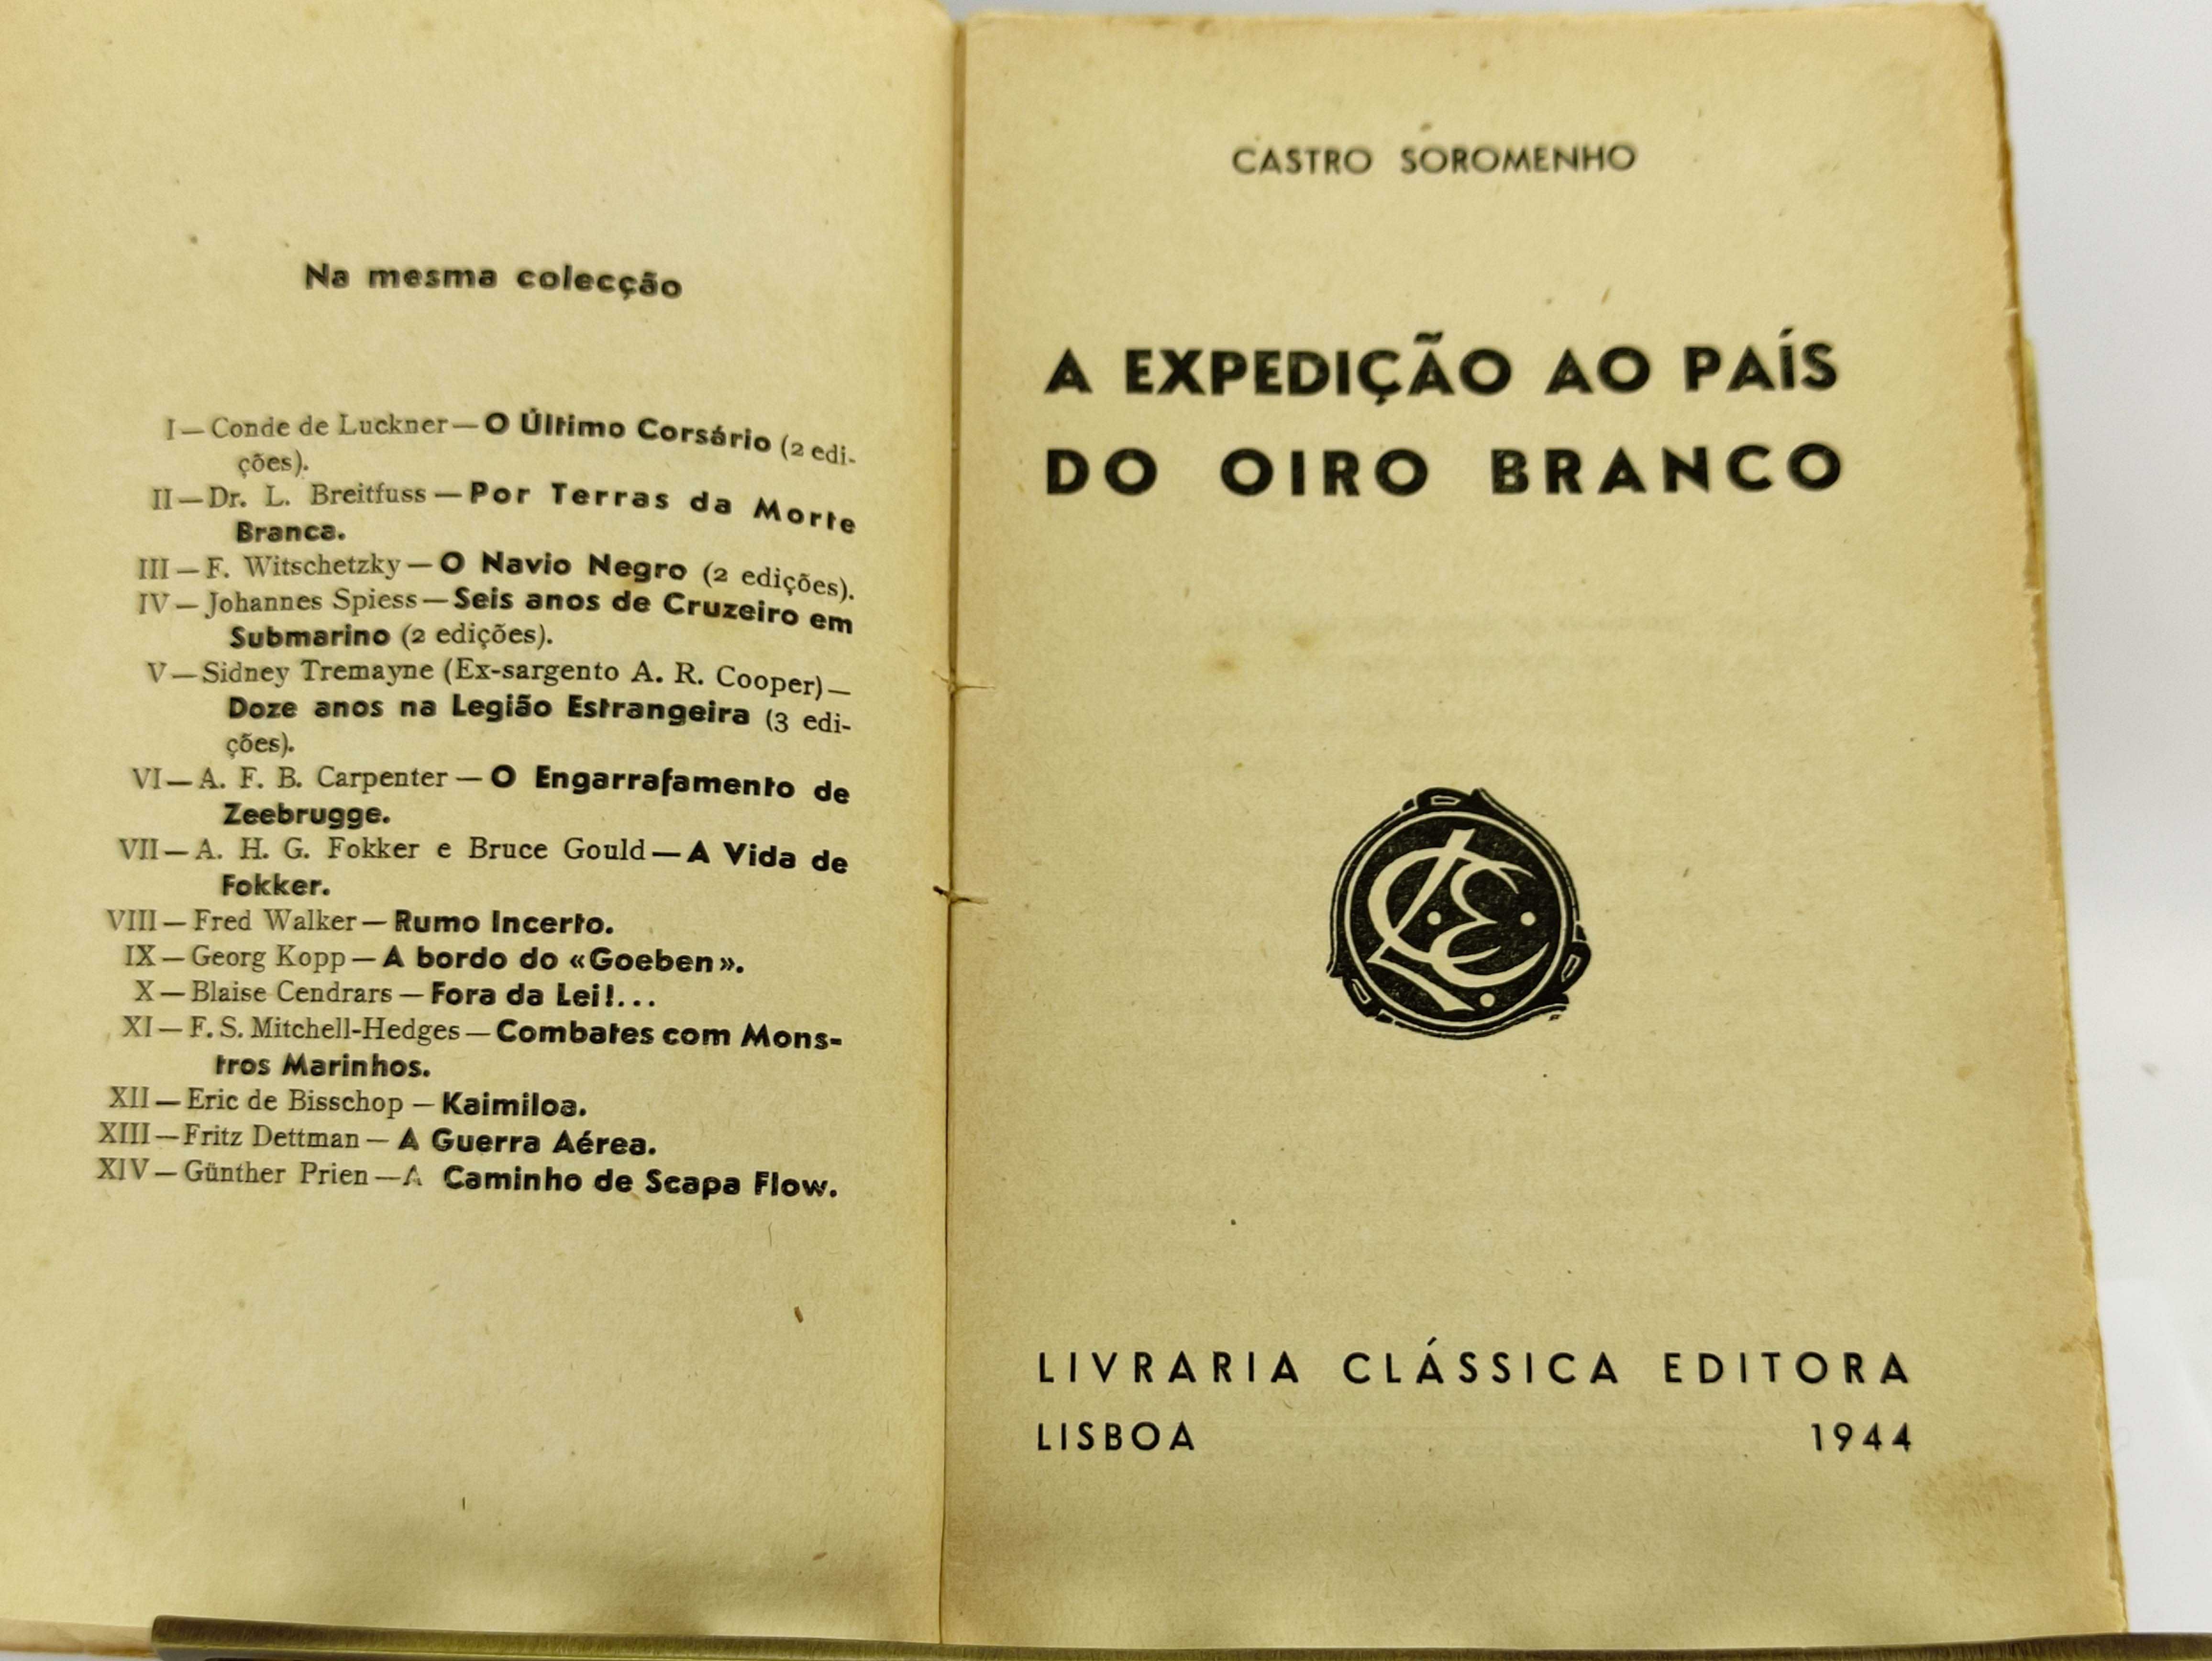 Livro "A Expedição ao País do Oiro Branco", de Castro Soromenho (1944)